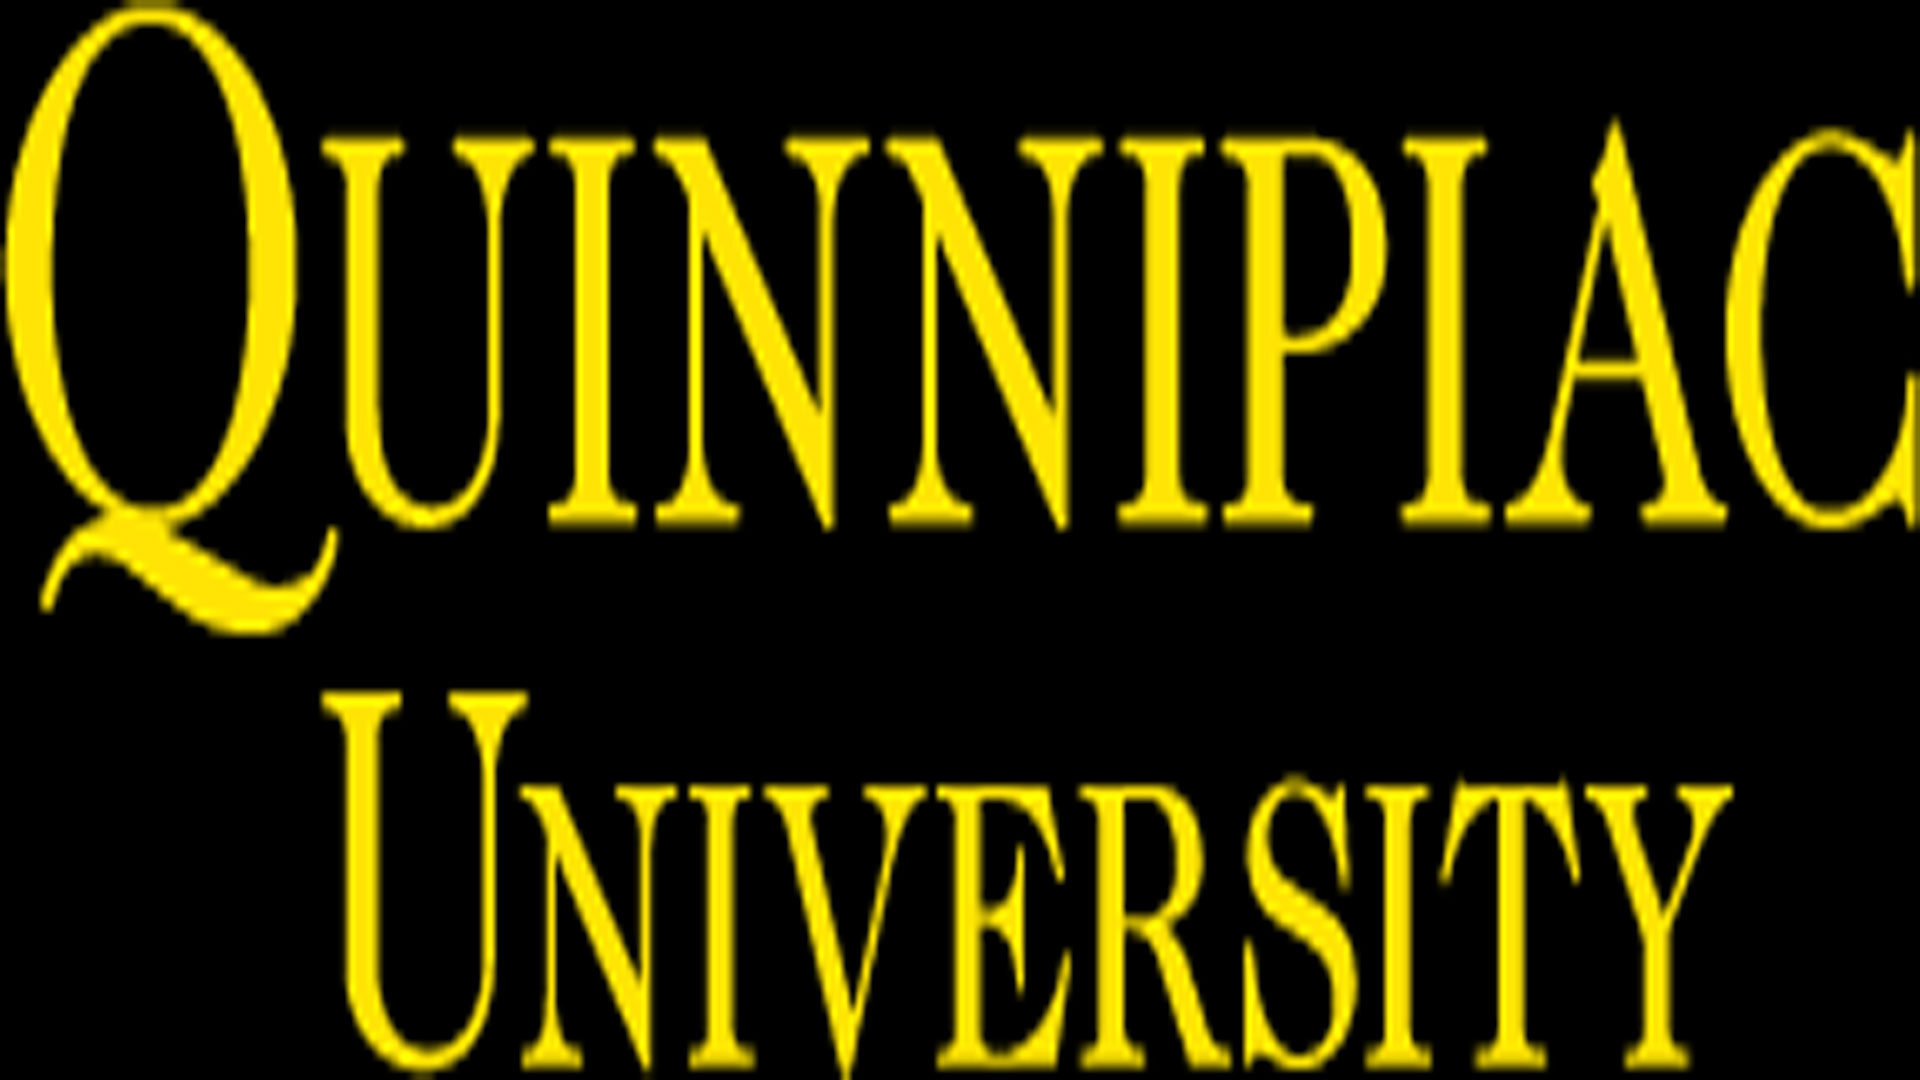 quinnipiac_university